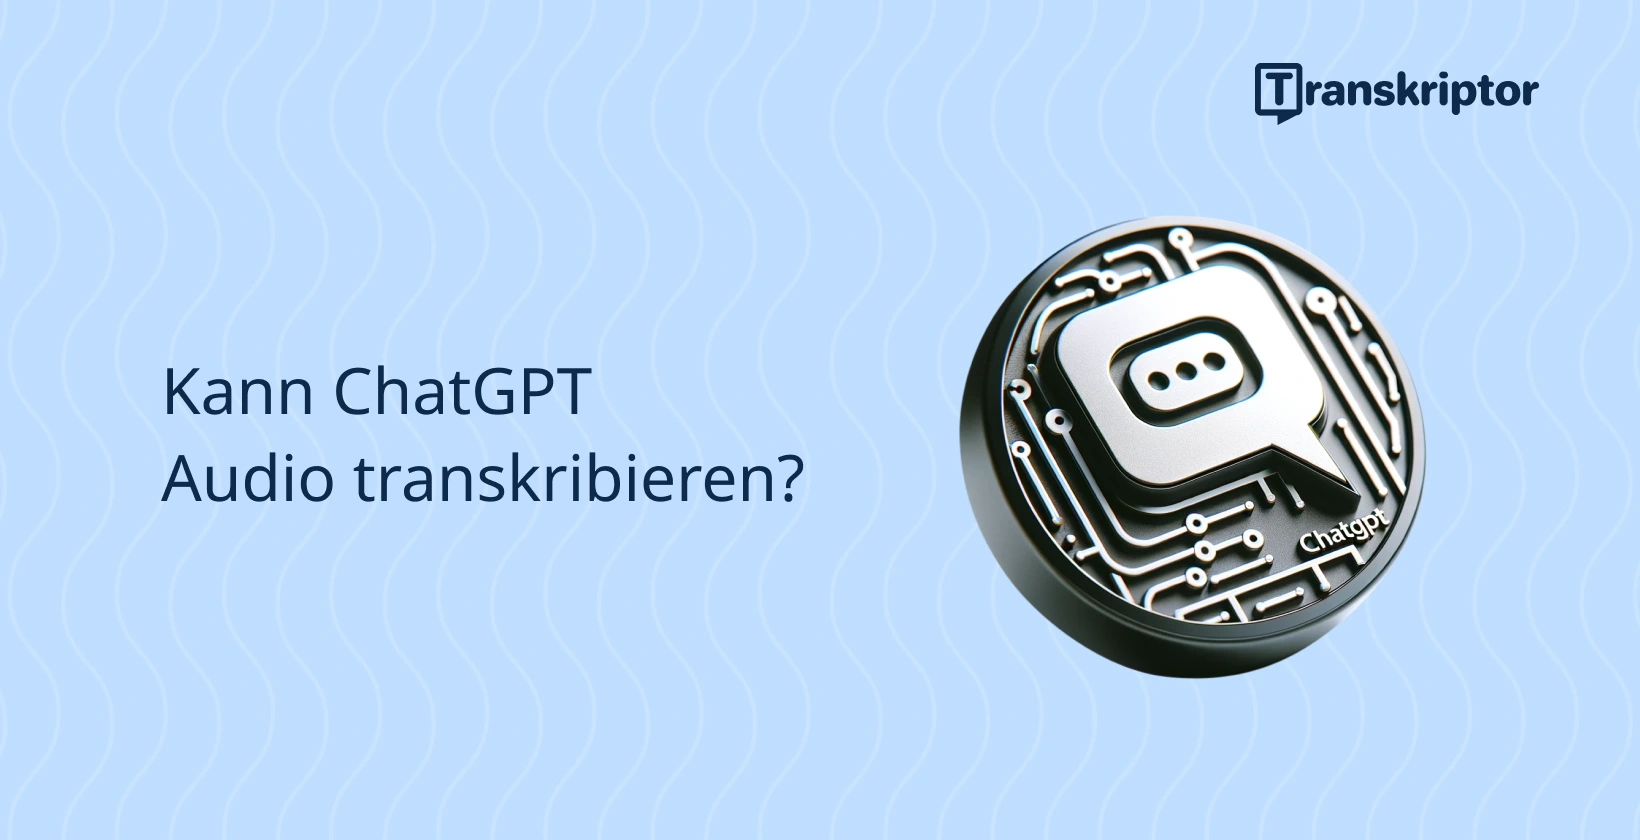 ChatGPT Audio-Transkriptionssymbol auf welligem blauem Hintergrund, das die Transkriptionsfähigkeit von ChatGPT in Frage stellt.